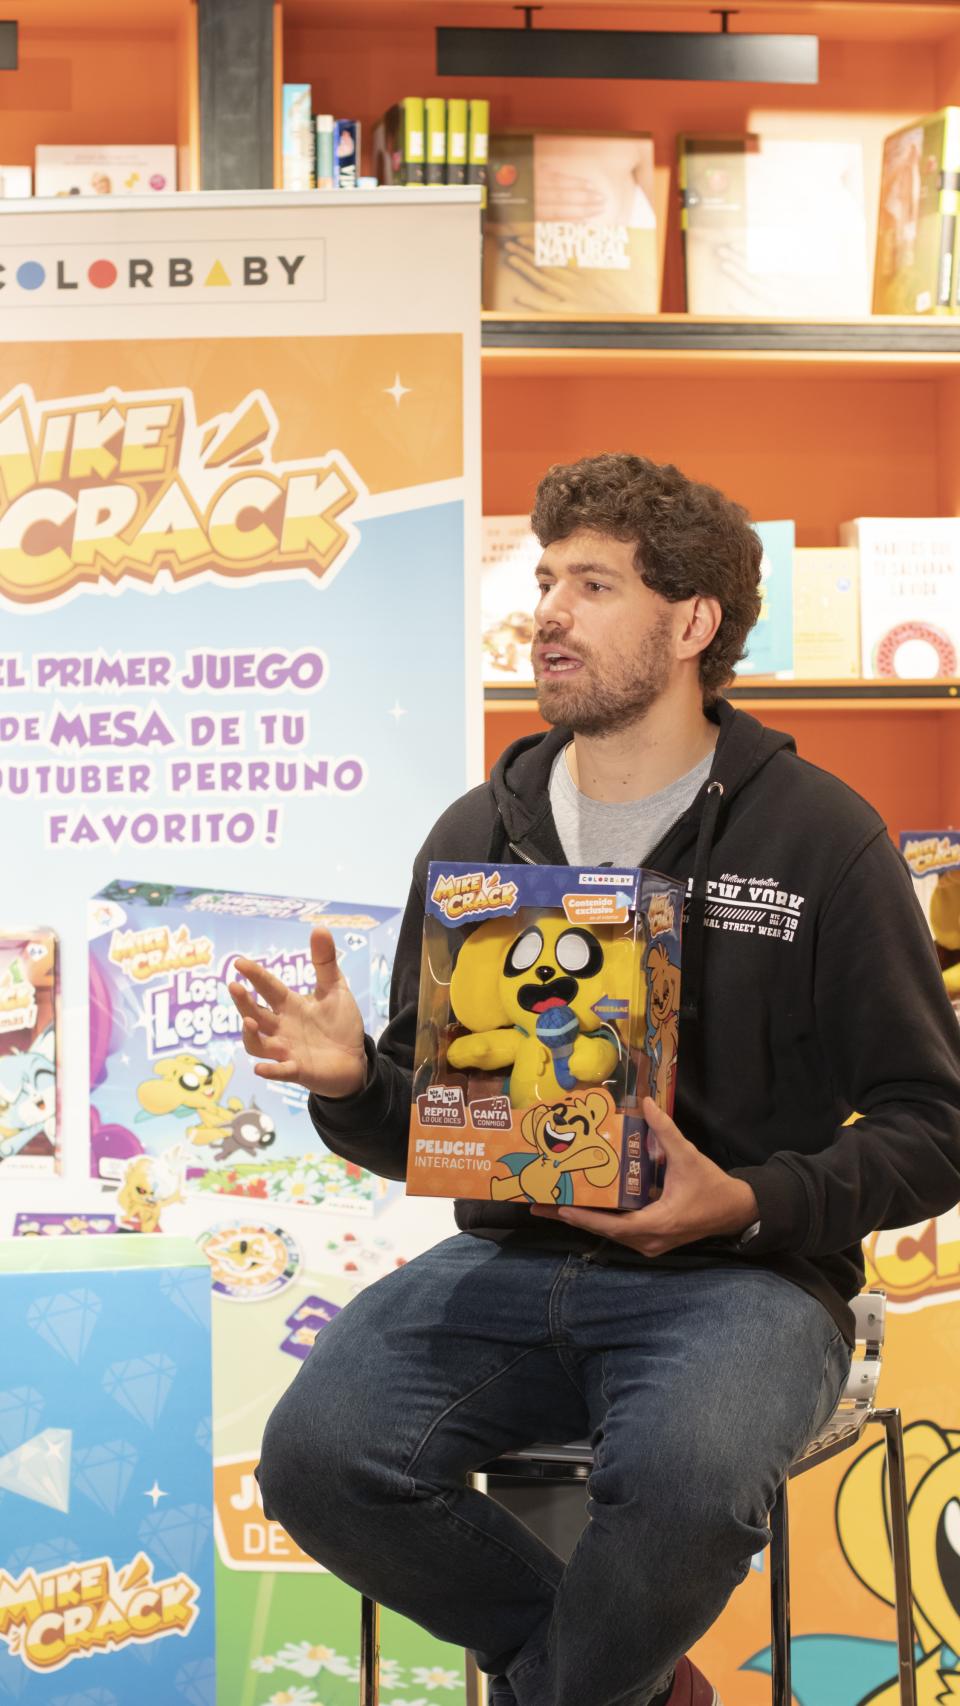 Miguel Bernal en la presentación de los juguetes de Mikecrack.